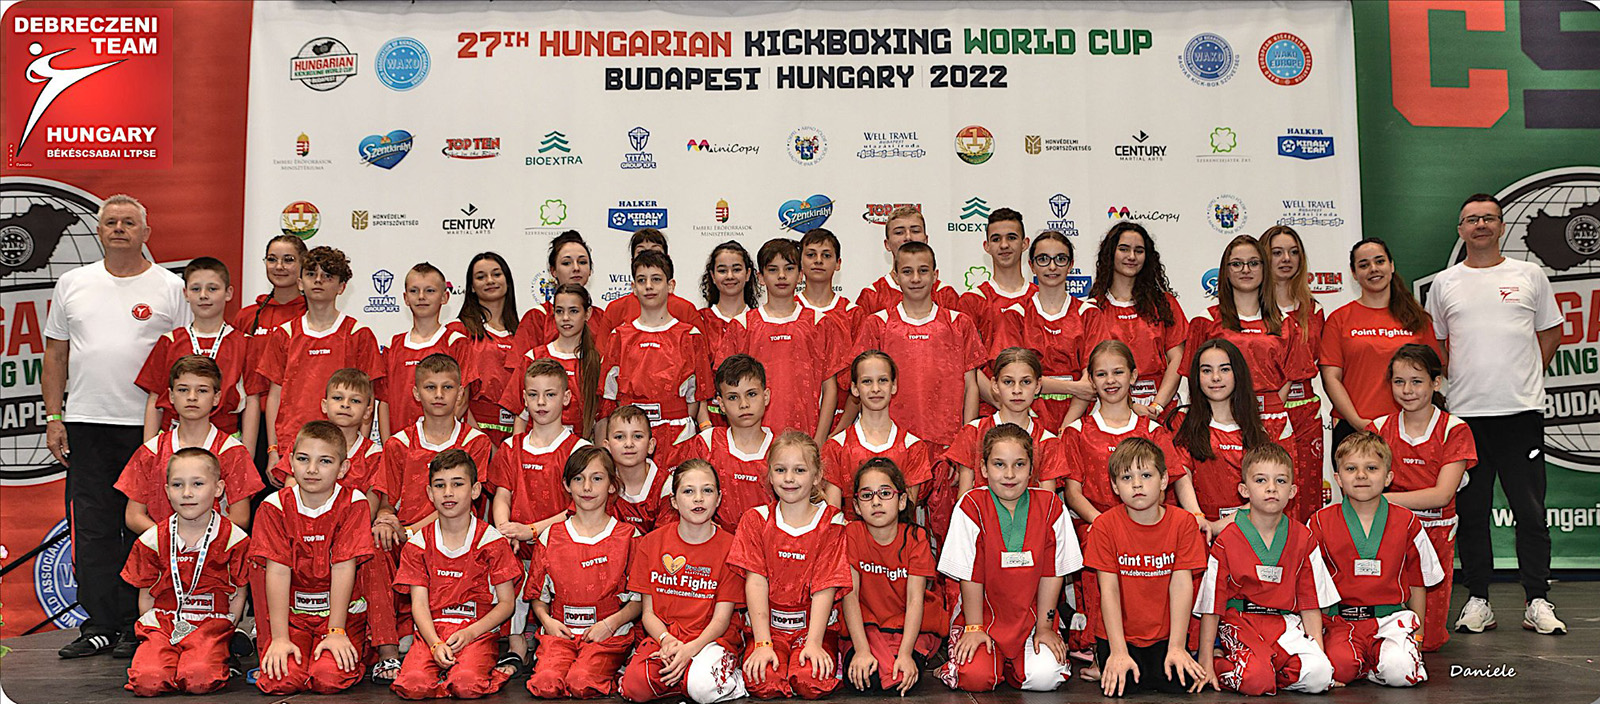 Budapesti Kick-box Világkupa – a Békéscsabai JALTE Debreczeni team csapata, balról Haba József edző, jobbról Debreczeni Dezső vezető-edző